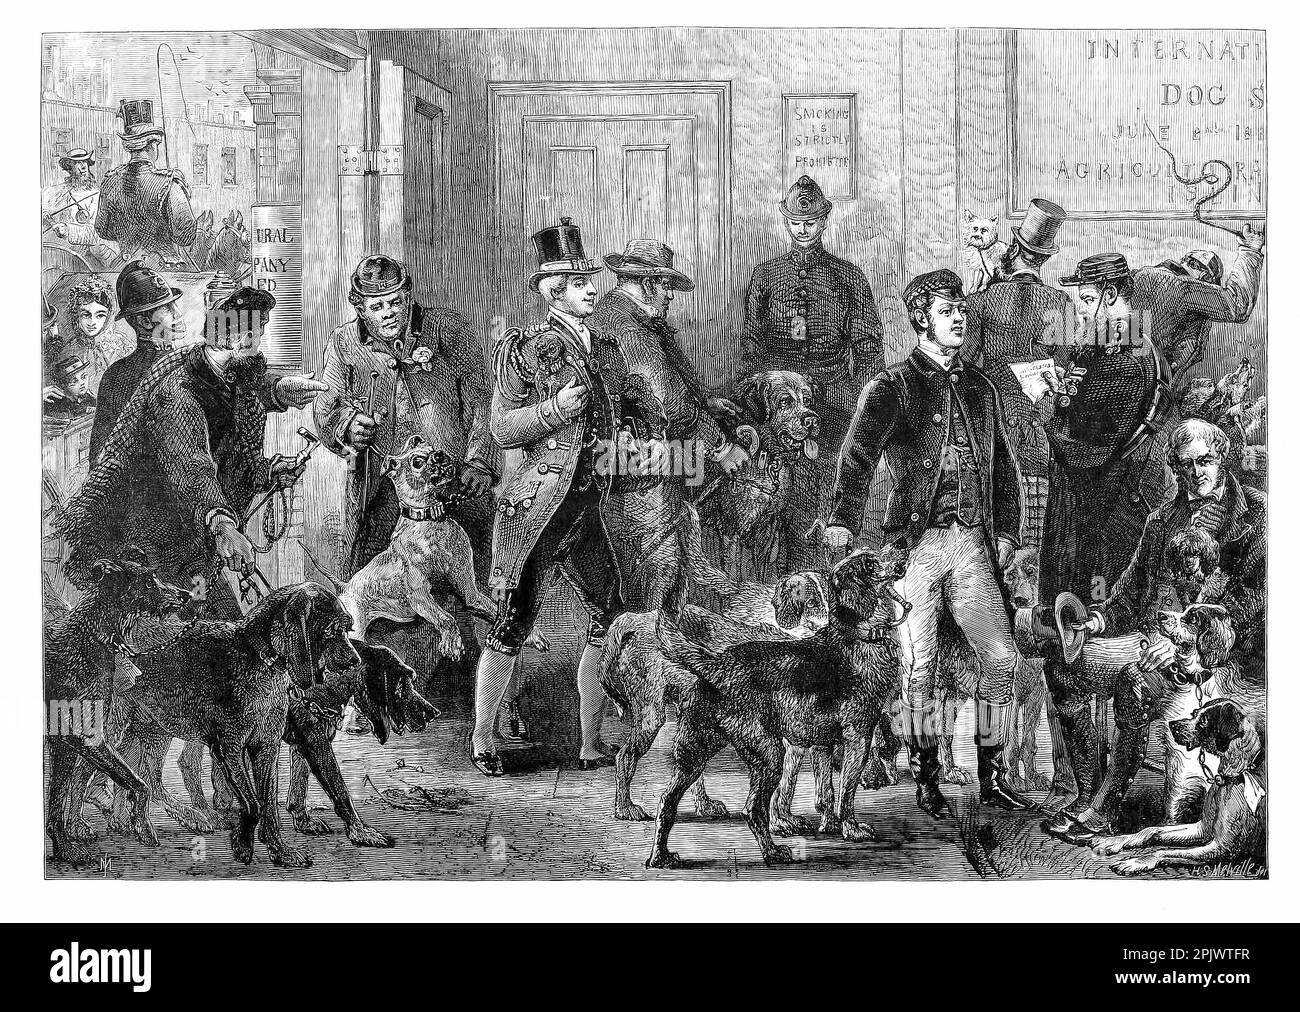 Los perros llegan a la Exposición Canina Internacional de 1865 en Islington, 8 años antes de que la exposición canina Crufts debute en el mismo lugar de Londres. Ilustración de Harden Sidney Melville Foto de stock